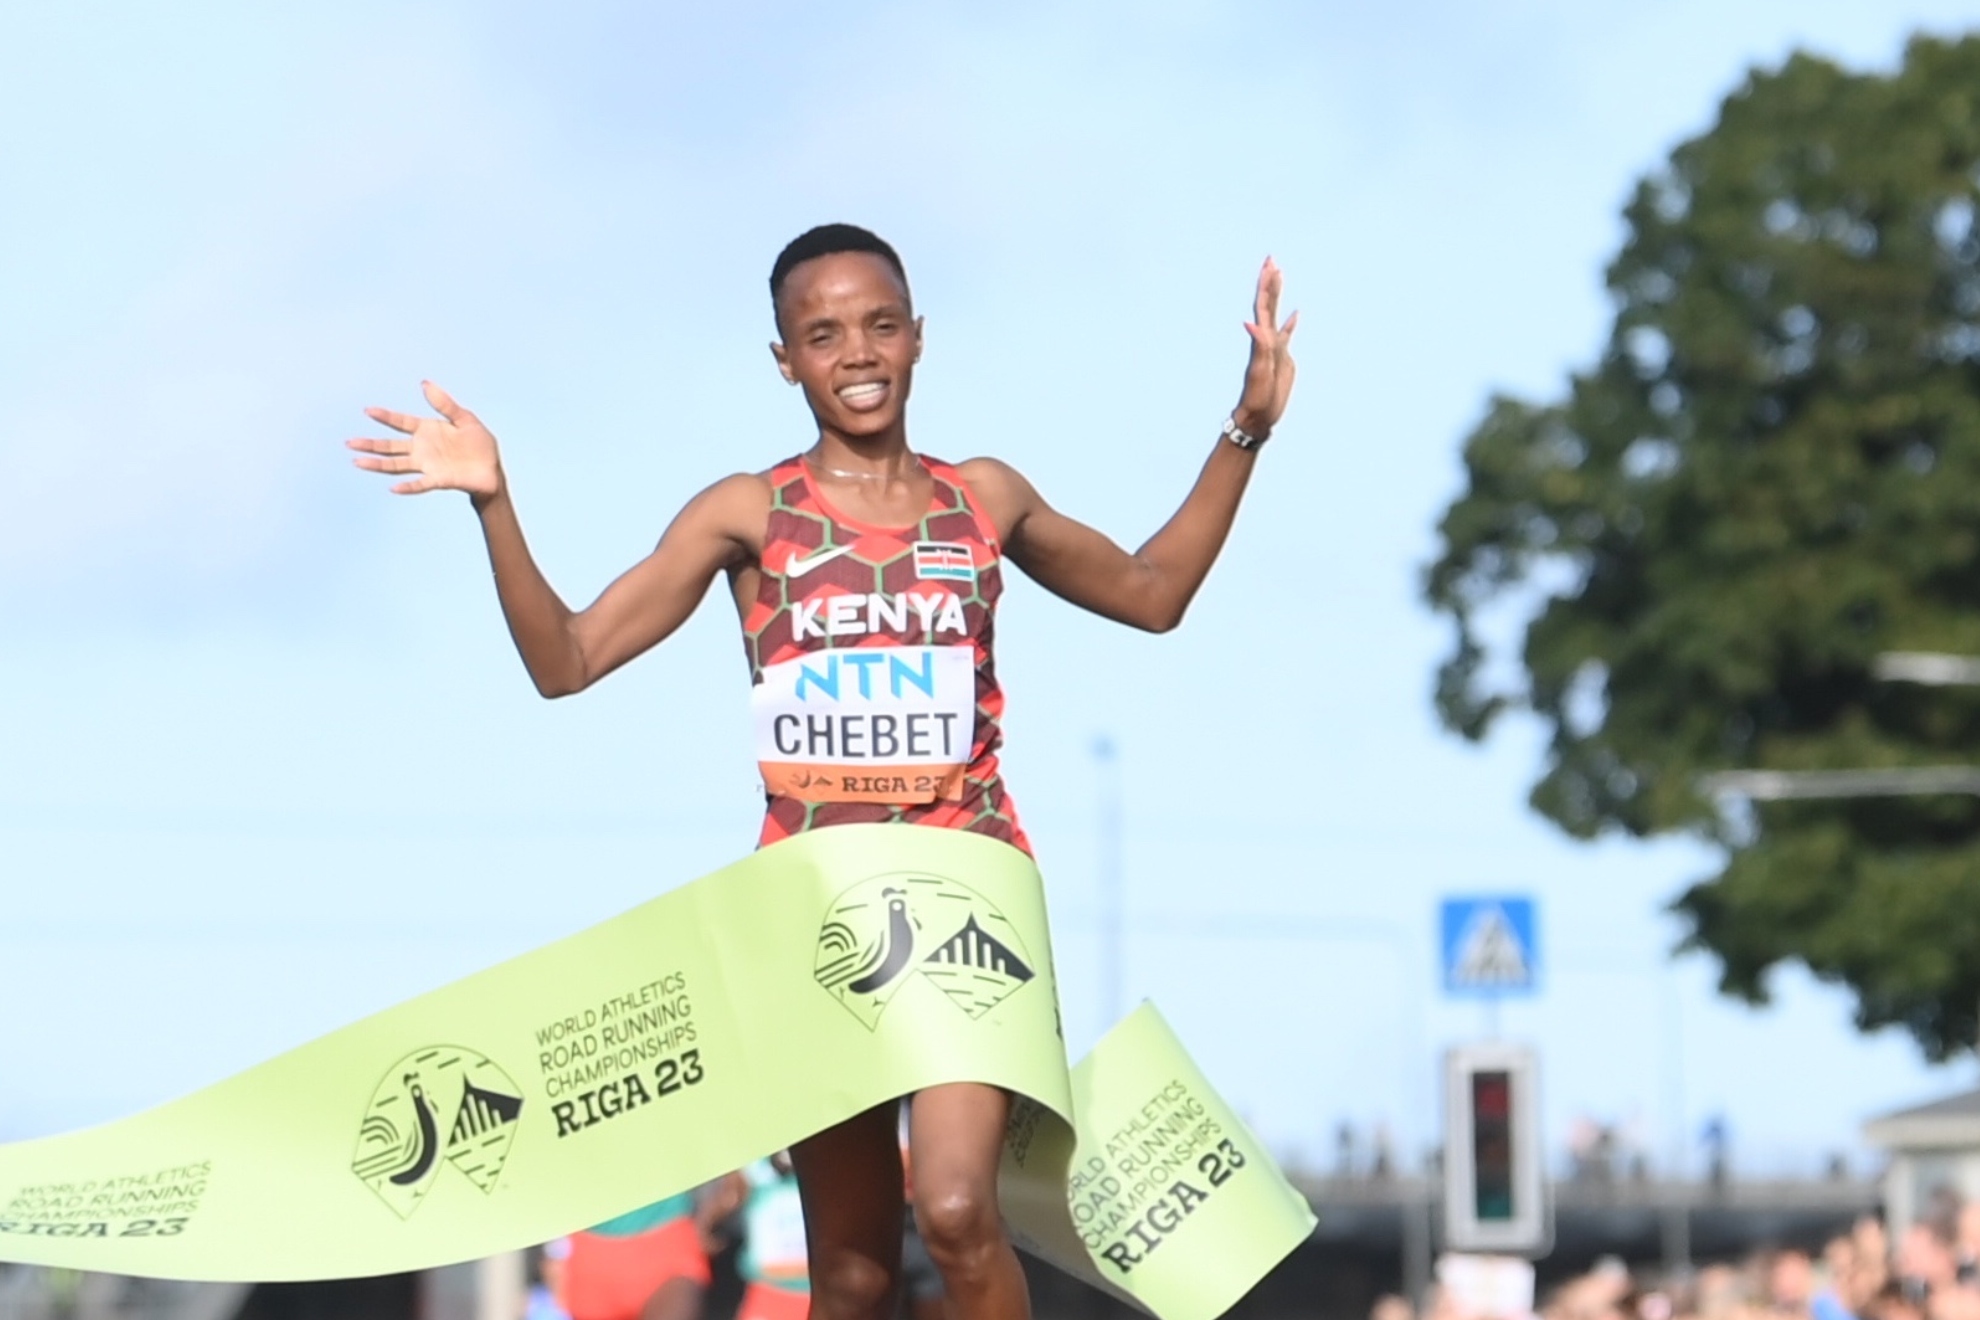 La keniata Chebet y el etíope Gebrhiwet, campeones del mundo de 5k